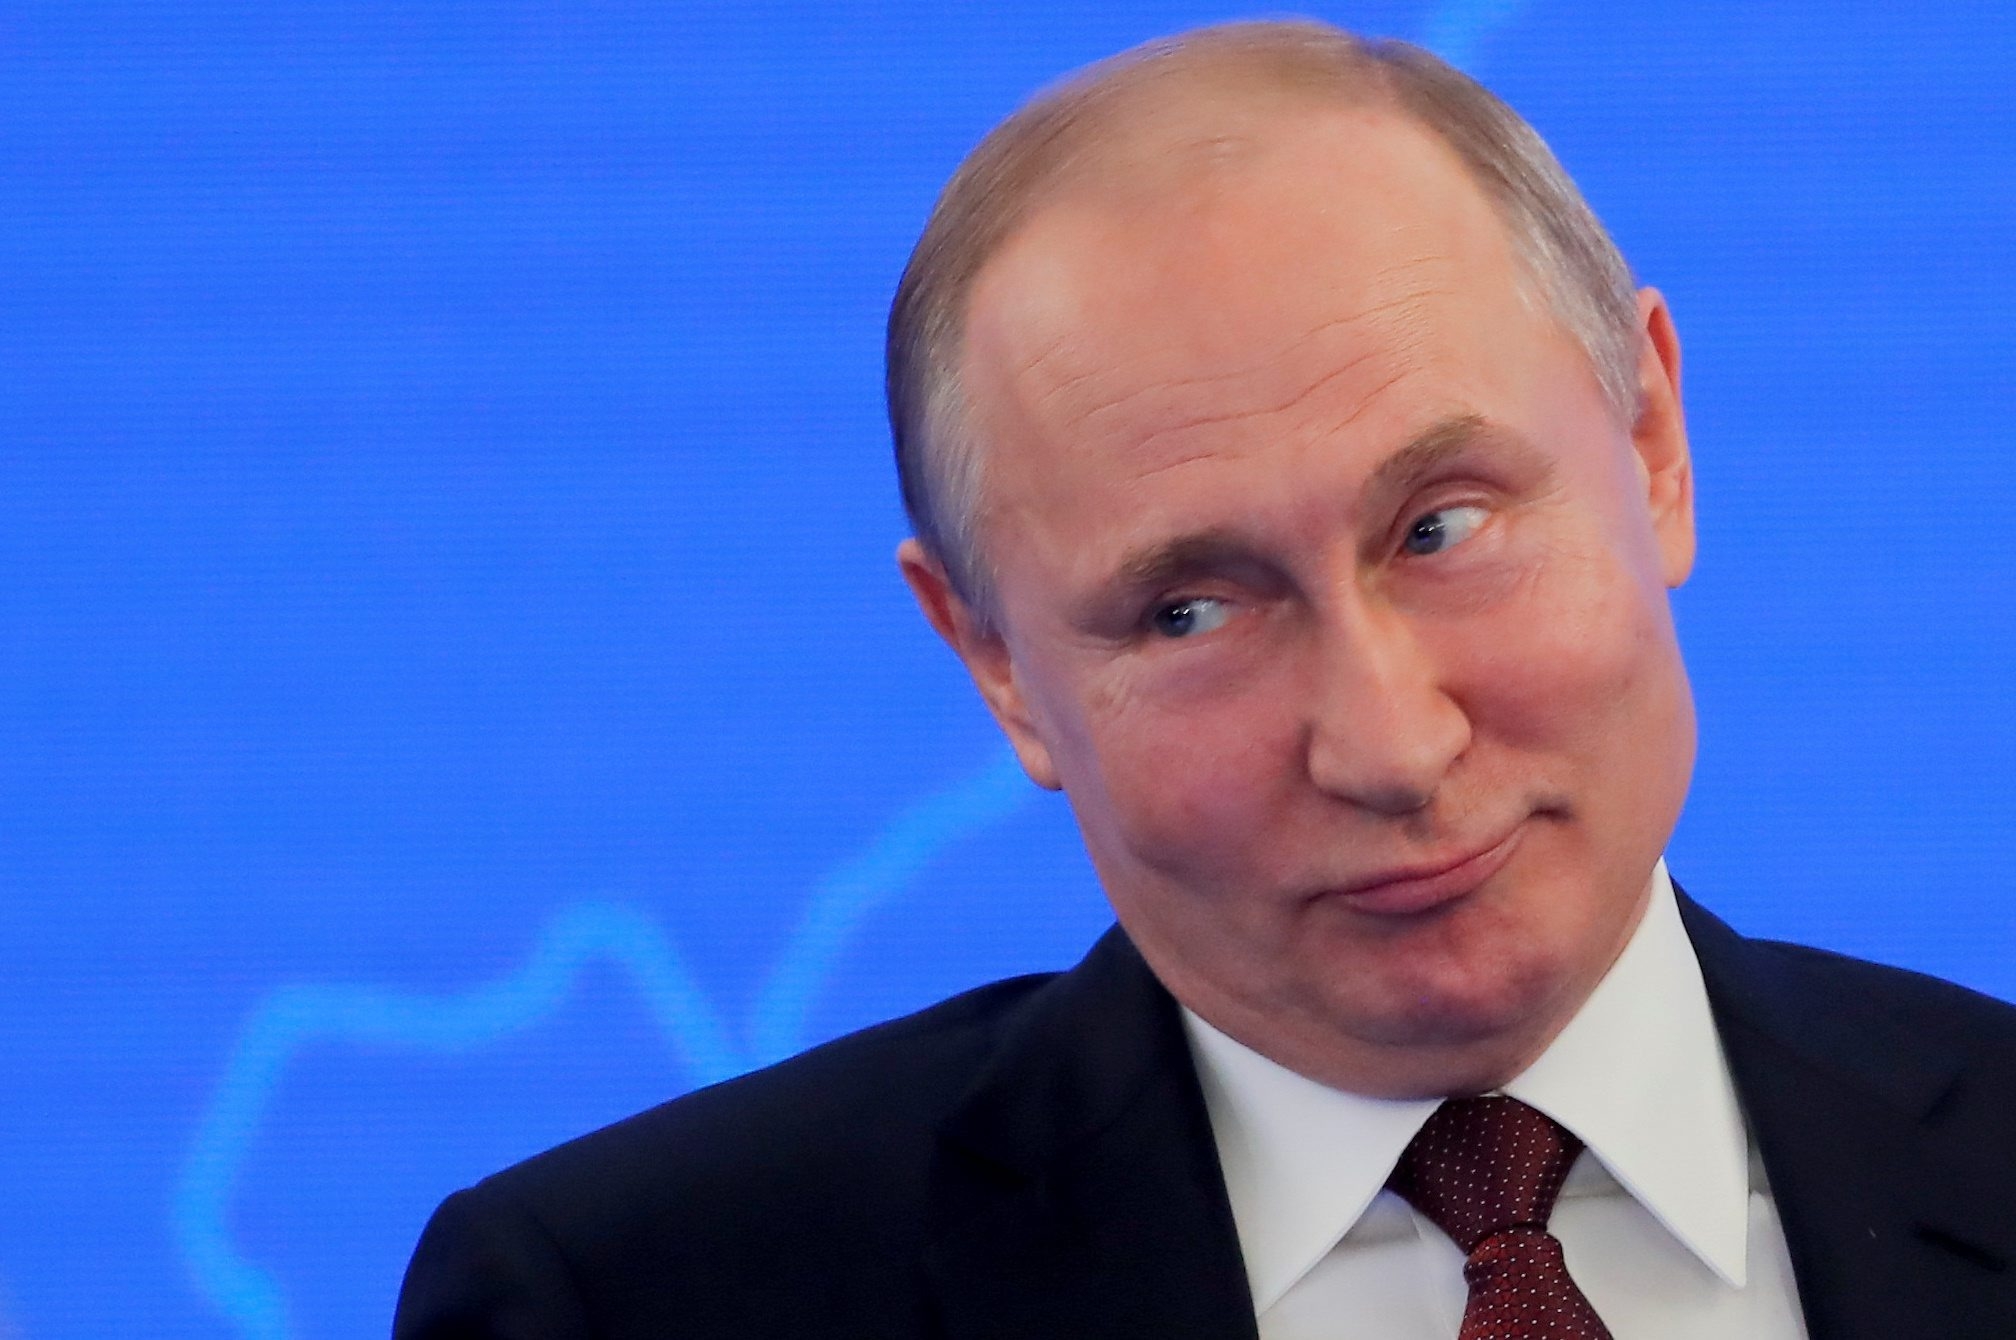 Путин заявил о мощном сплочении общества. Но возможно ли это в обществе без справедливости